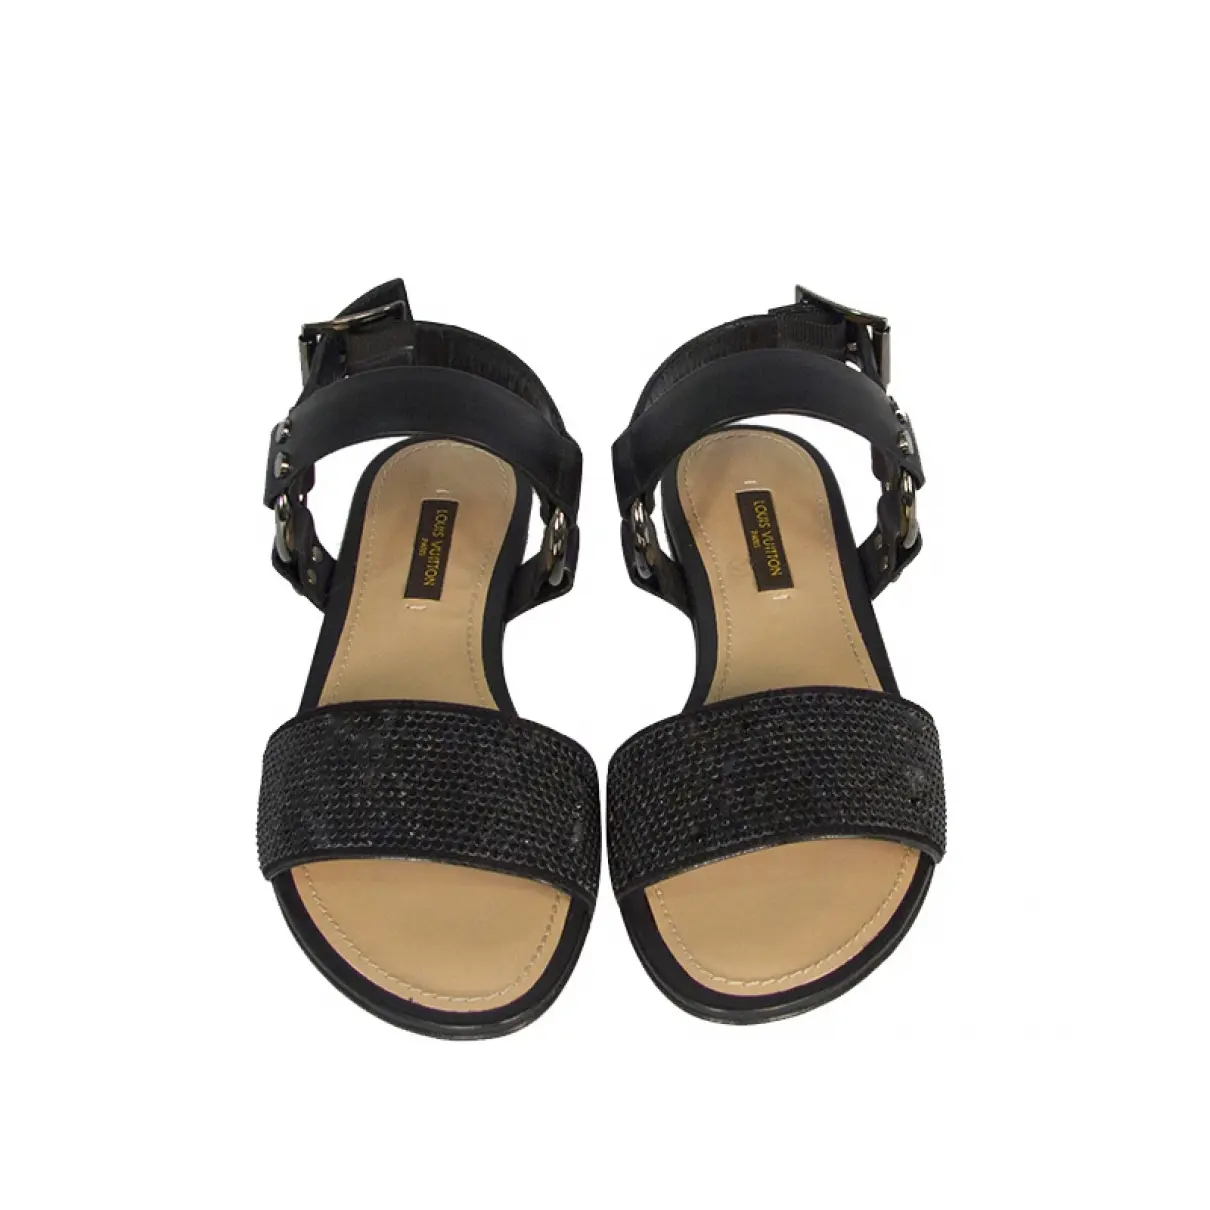 Buy Louis Vuitton Leather sandals online - Vintage